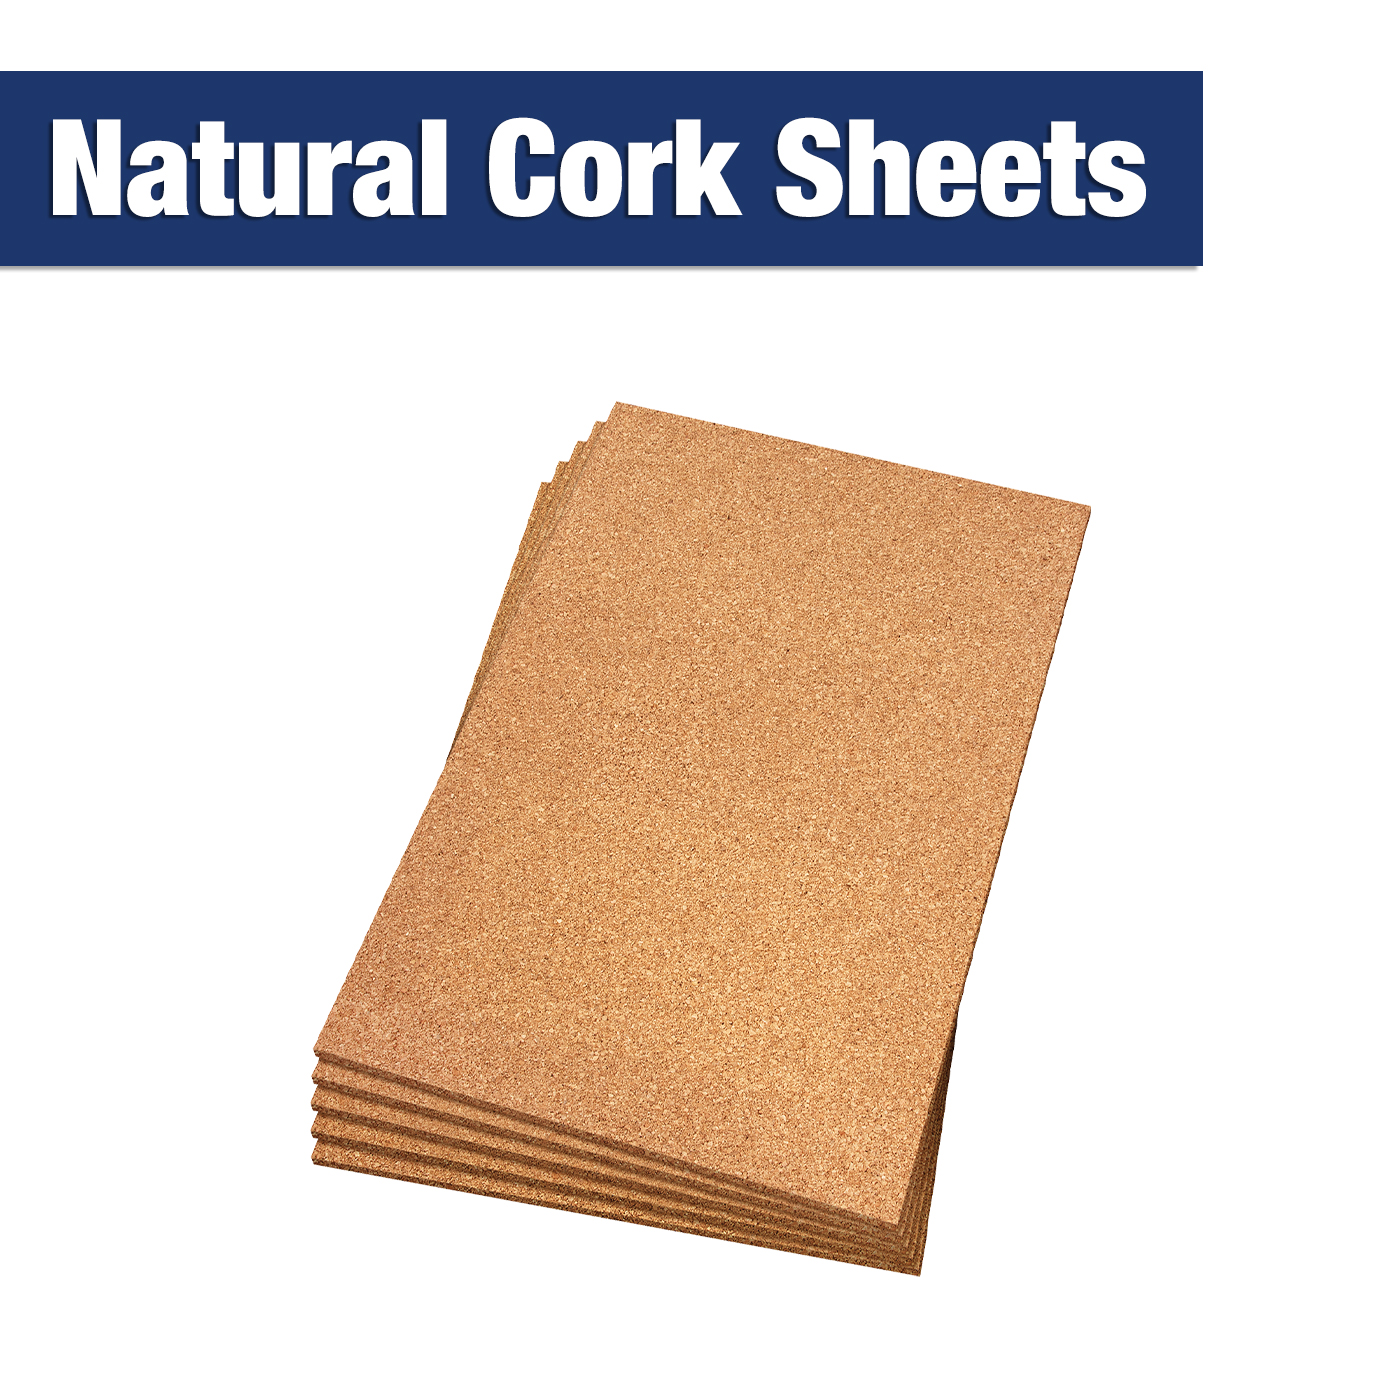 Natural Cork Sheets